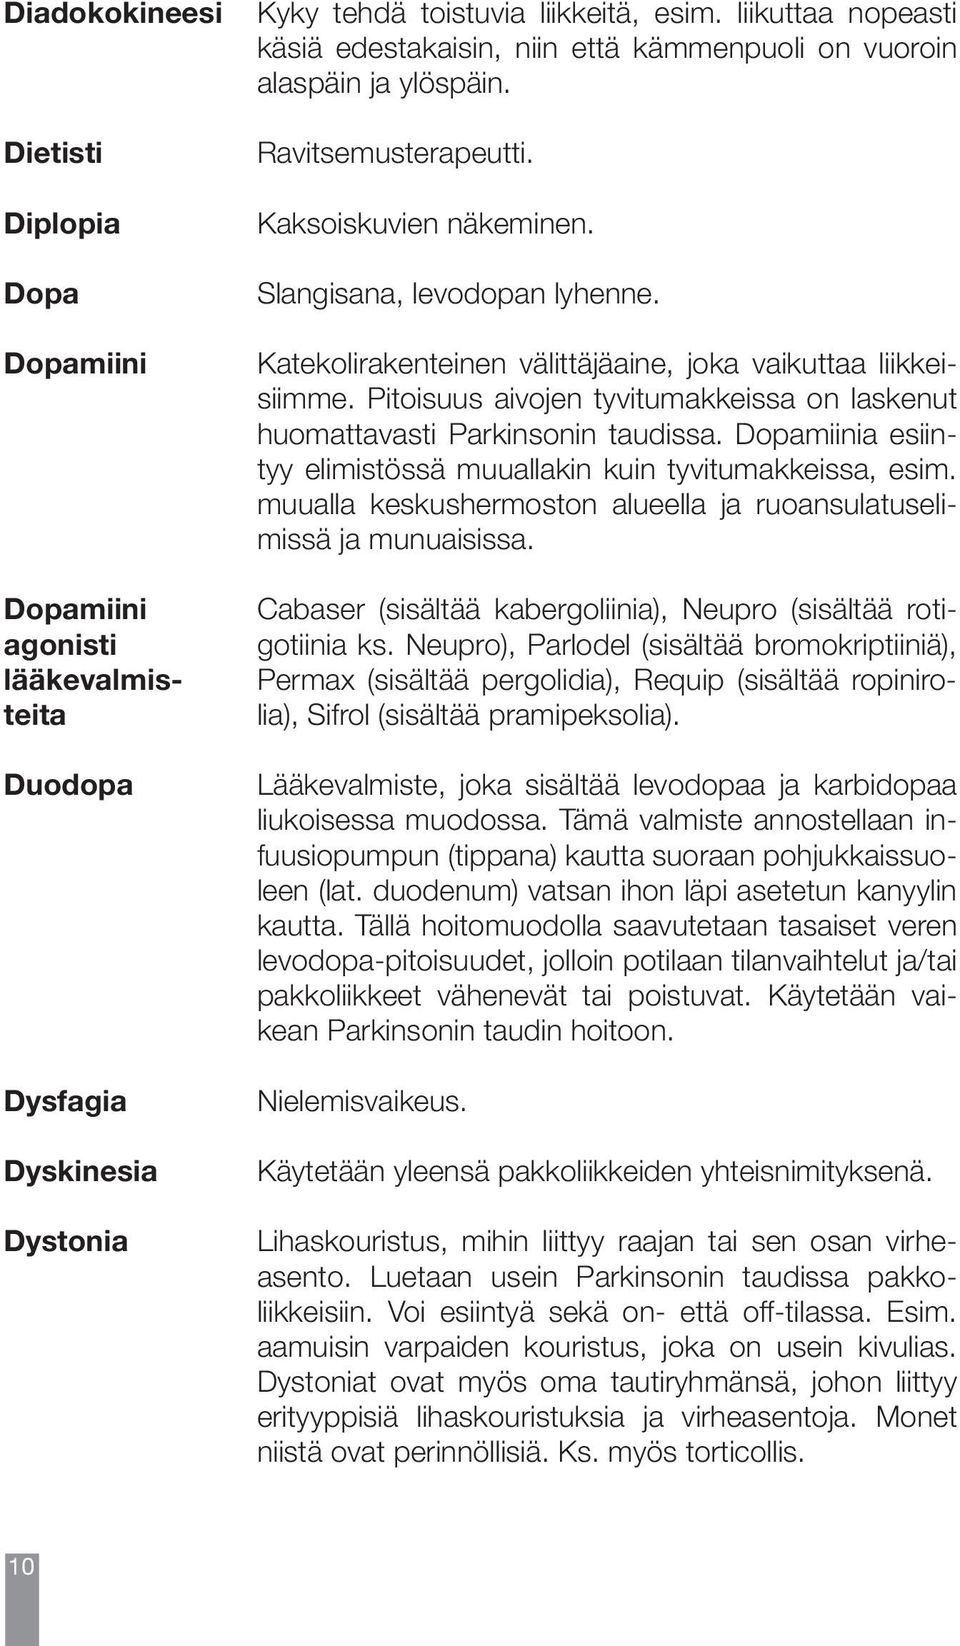 Diadokokineesi Dietisti Diplopia Dopa Dopamiini Dopamiini agonisti lääkevalmisteita Duodopa Dysfagia Dyskinesia Dystonia Kyky tehdä toistuvia liikkeitä, esim.